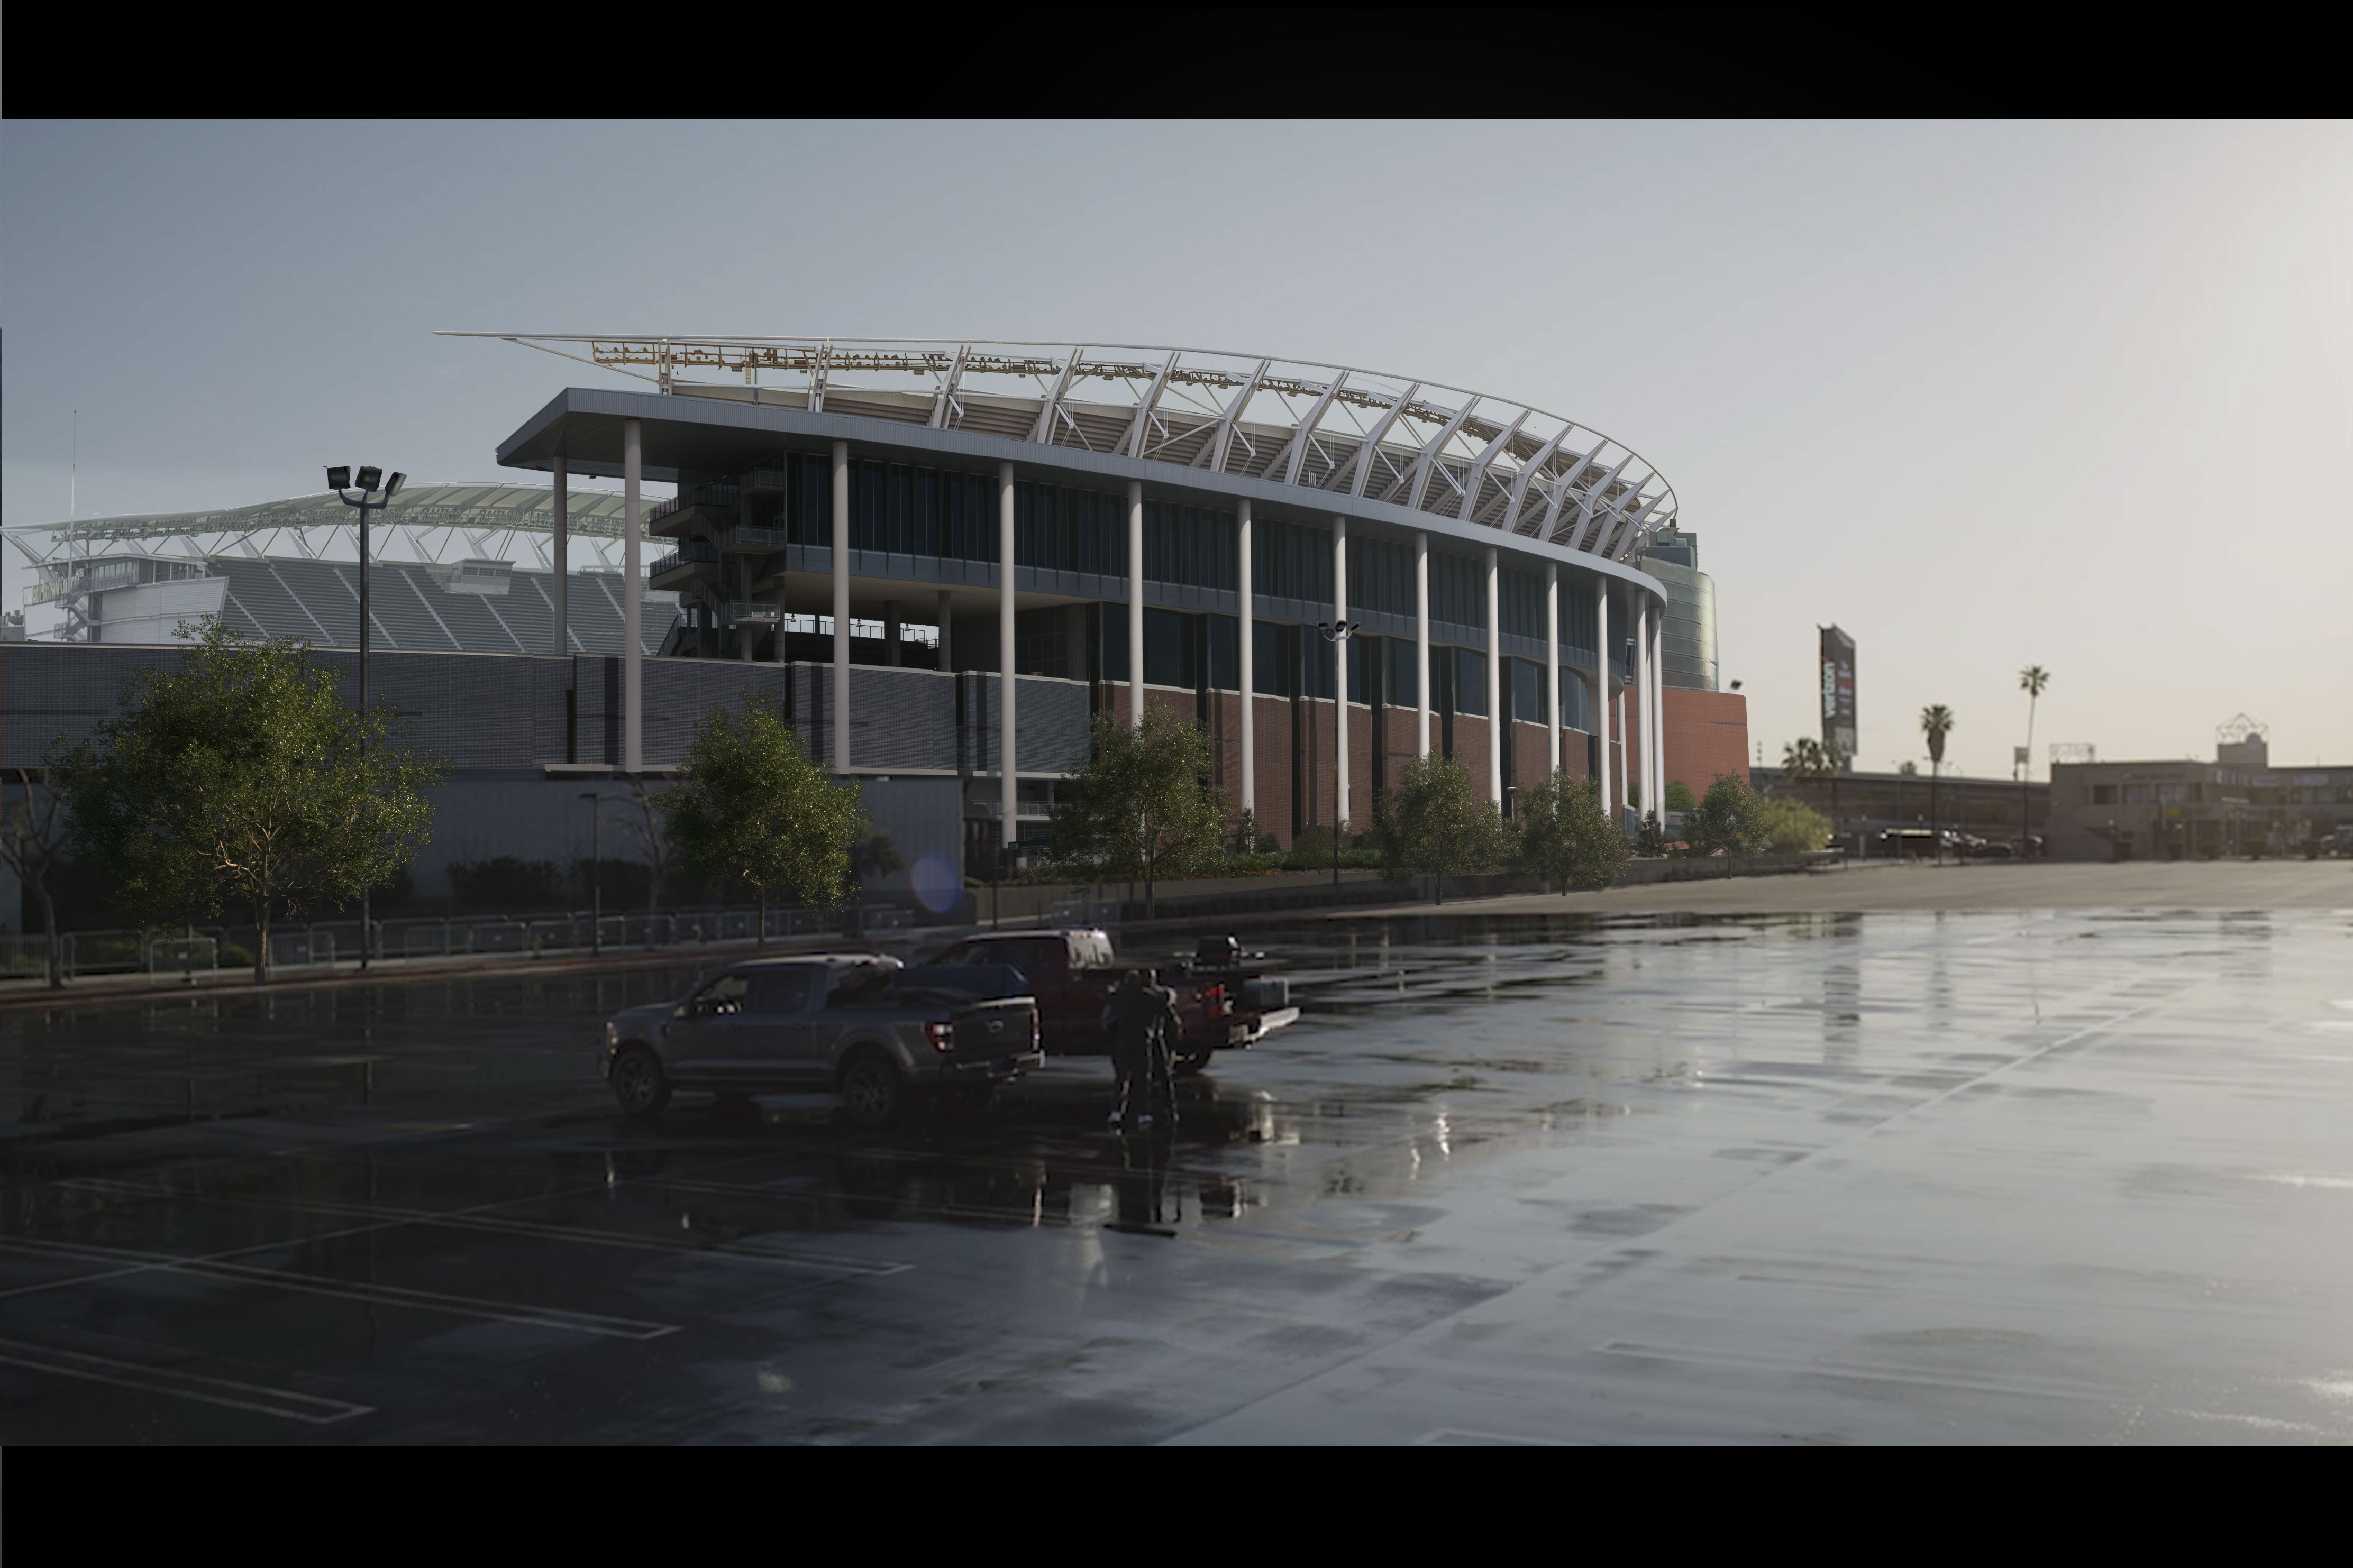 Stadium replacement